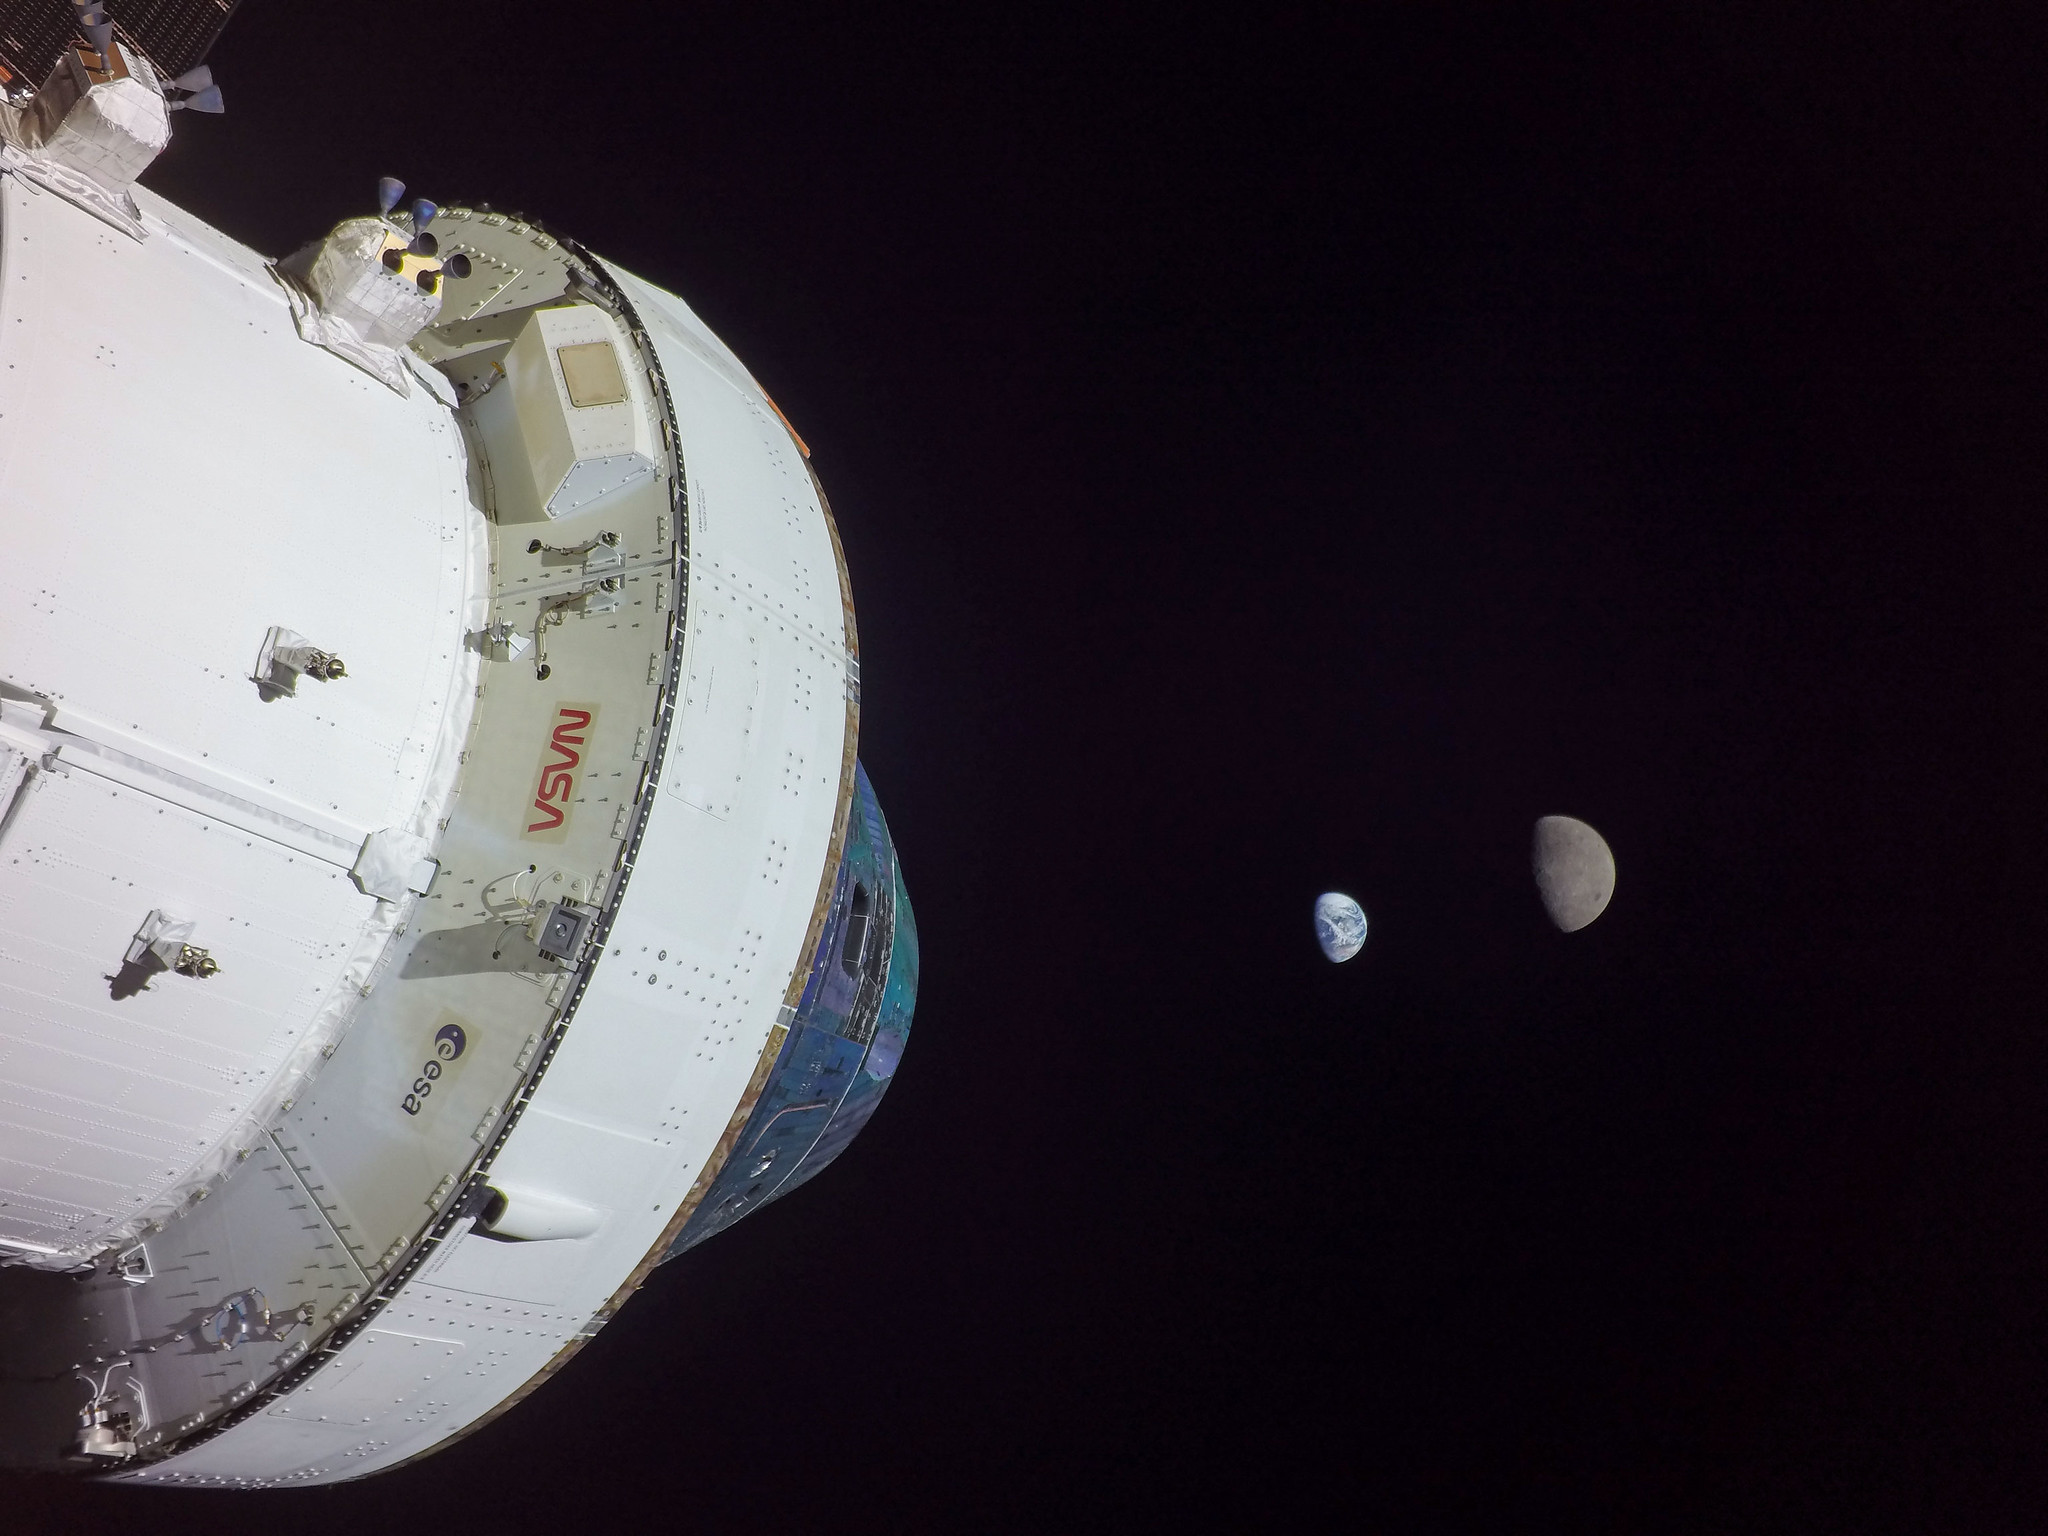 Прямая трансляция завершения миссии NASA к Луне «Artemis I»